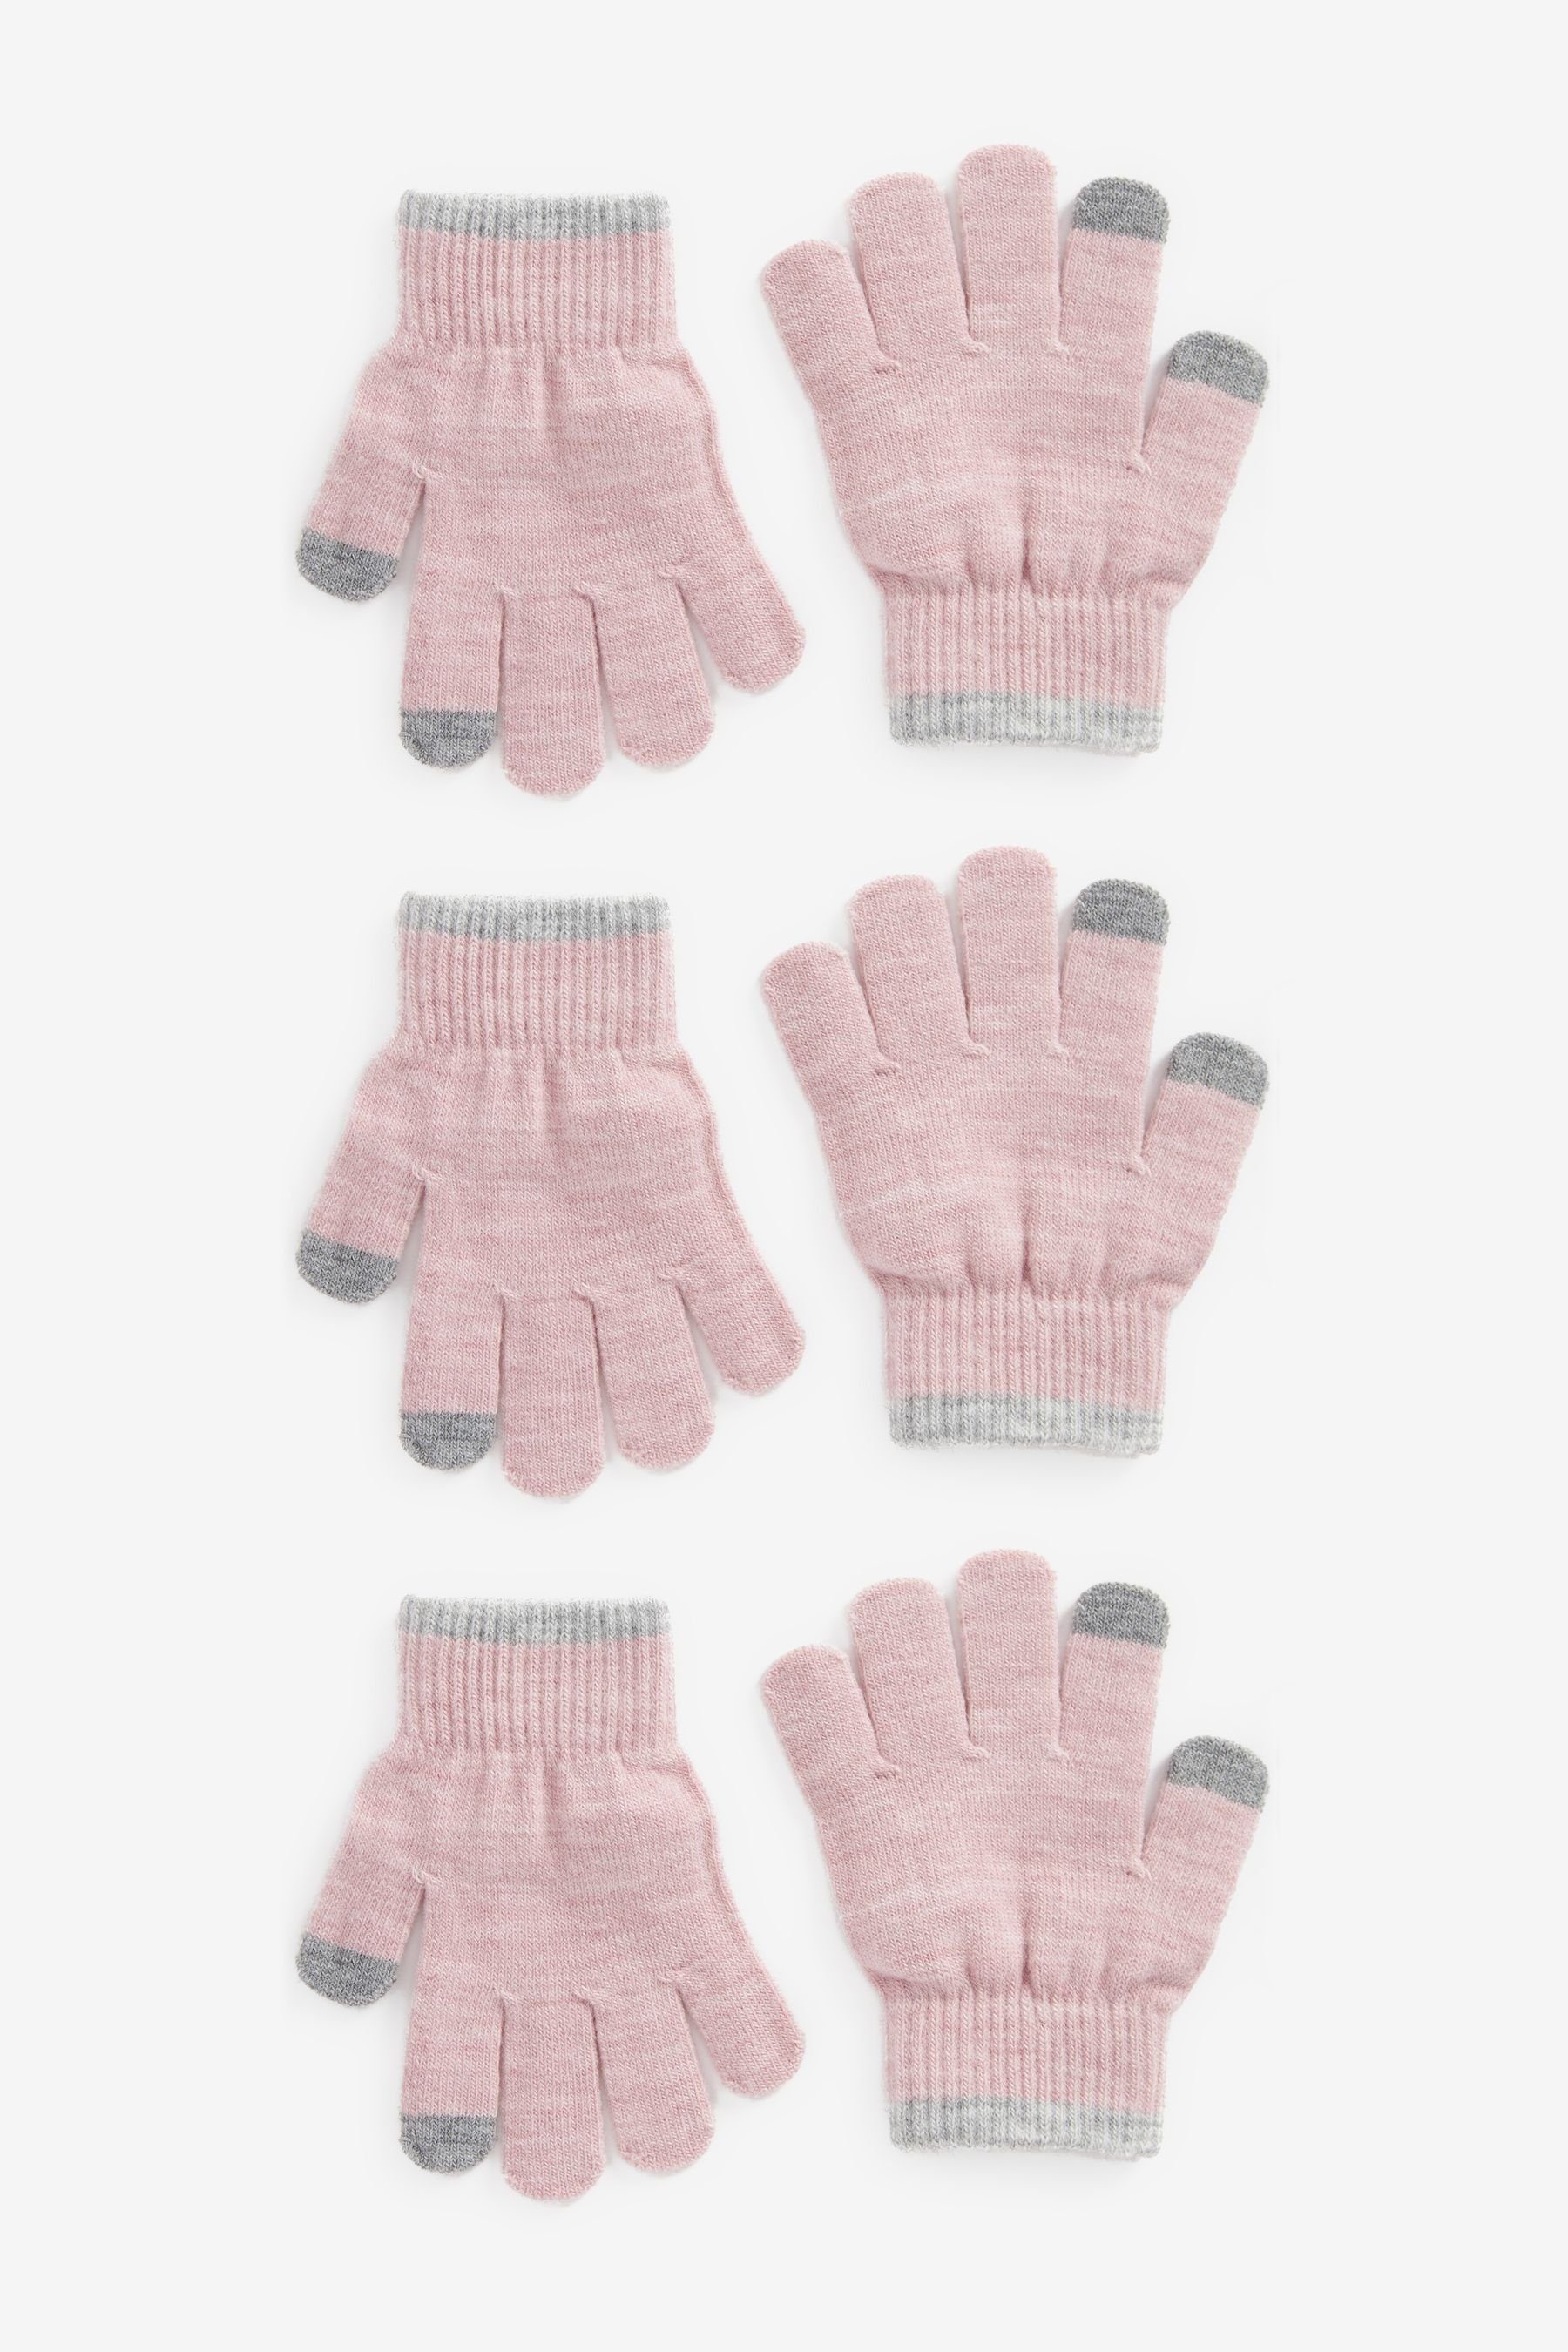 Next Strickhandschuhe 3er-Pack Magic Touch-Tip-Handschuhe Pink